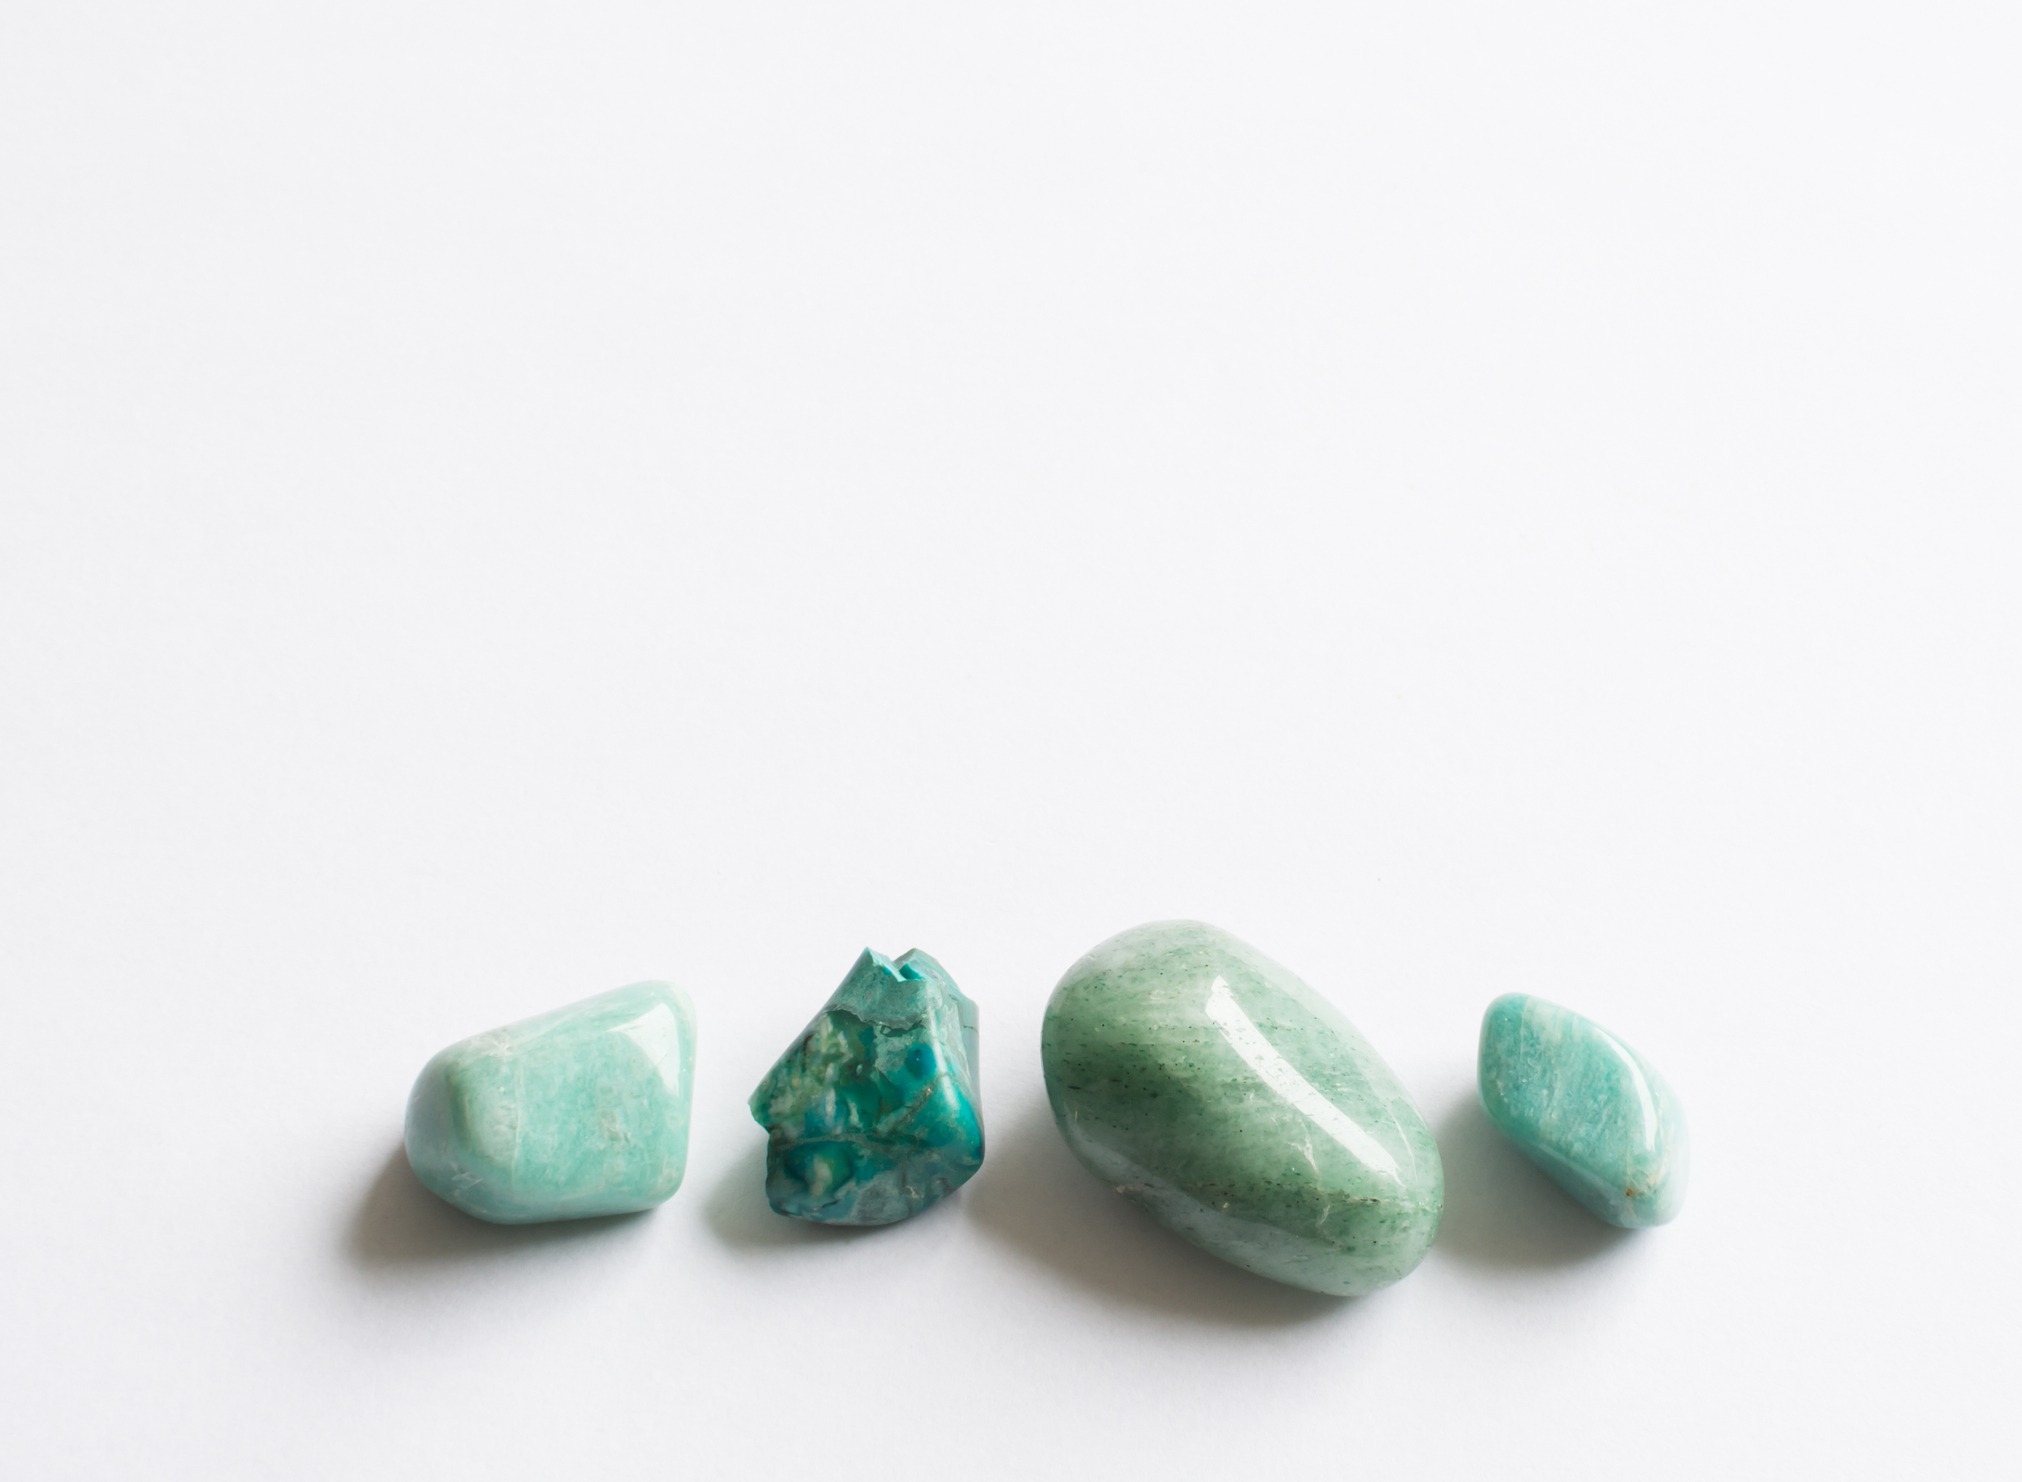 Four green semi-precious stones. Turquoise, aventurine, amazonite on white background.